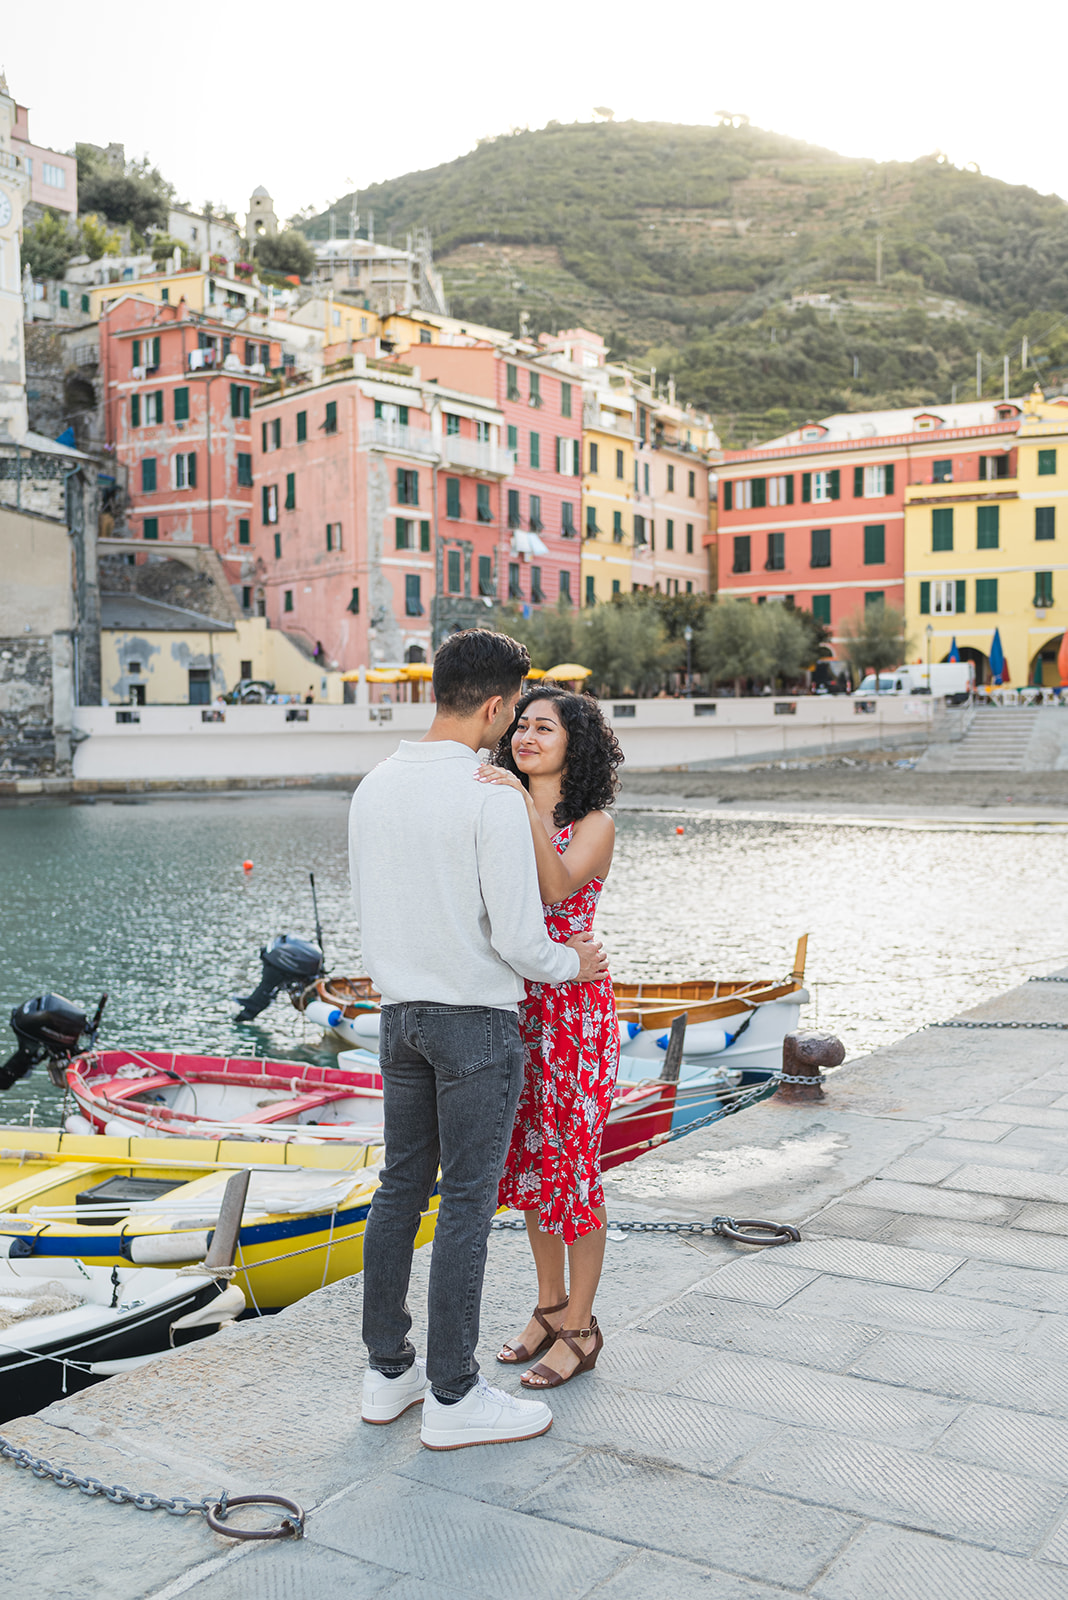 Vernazza Wedding proposal in Cinque Terre